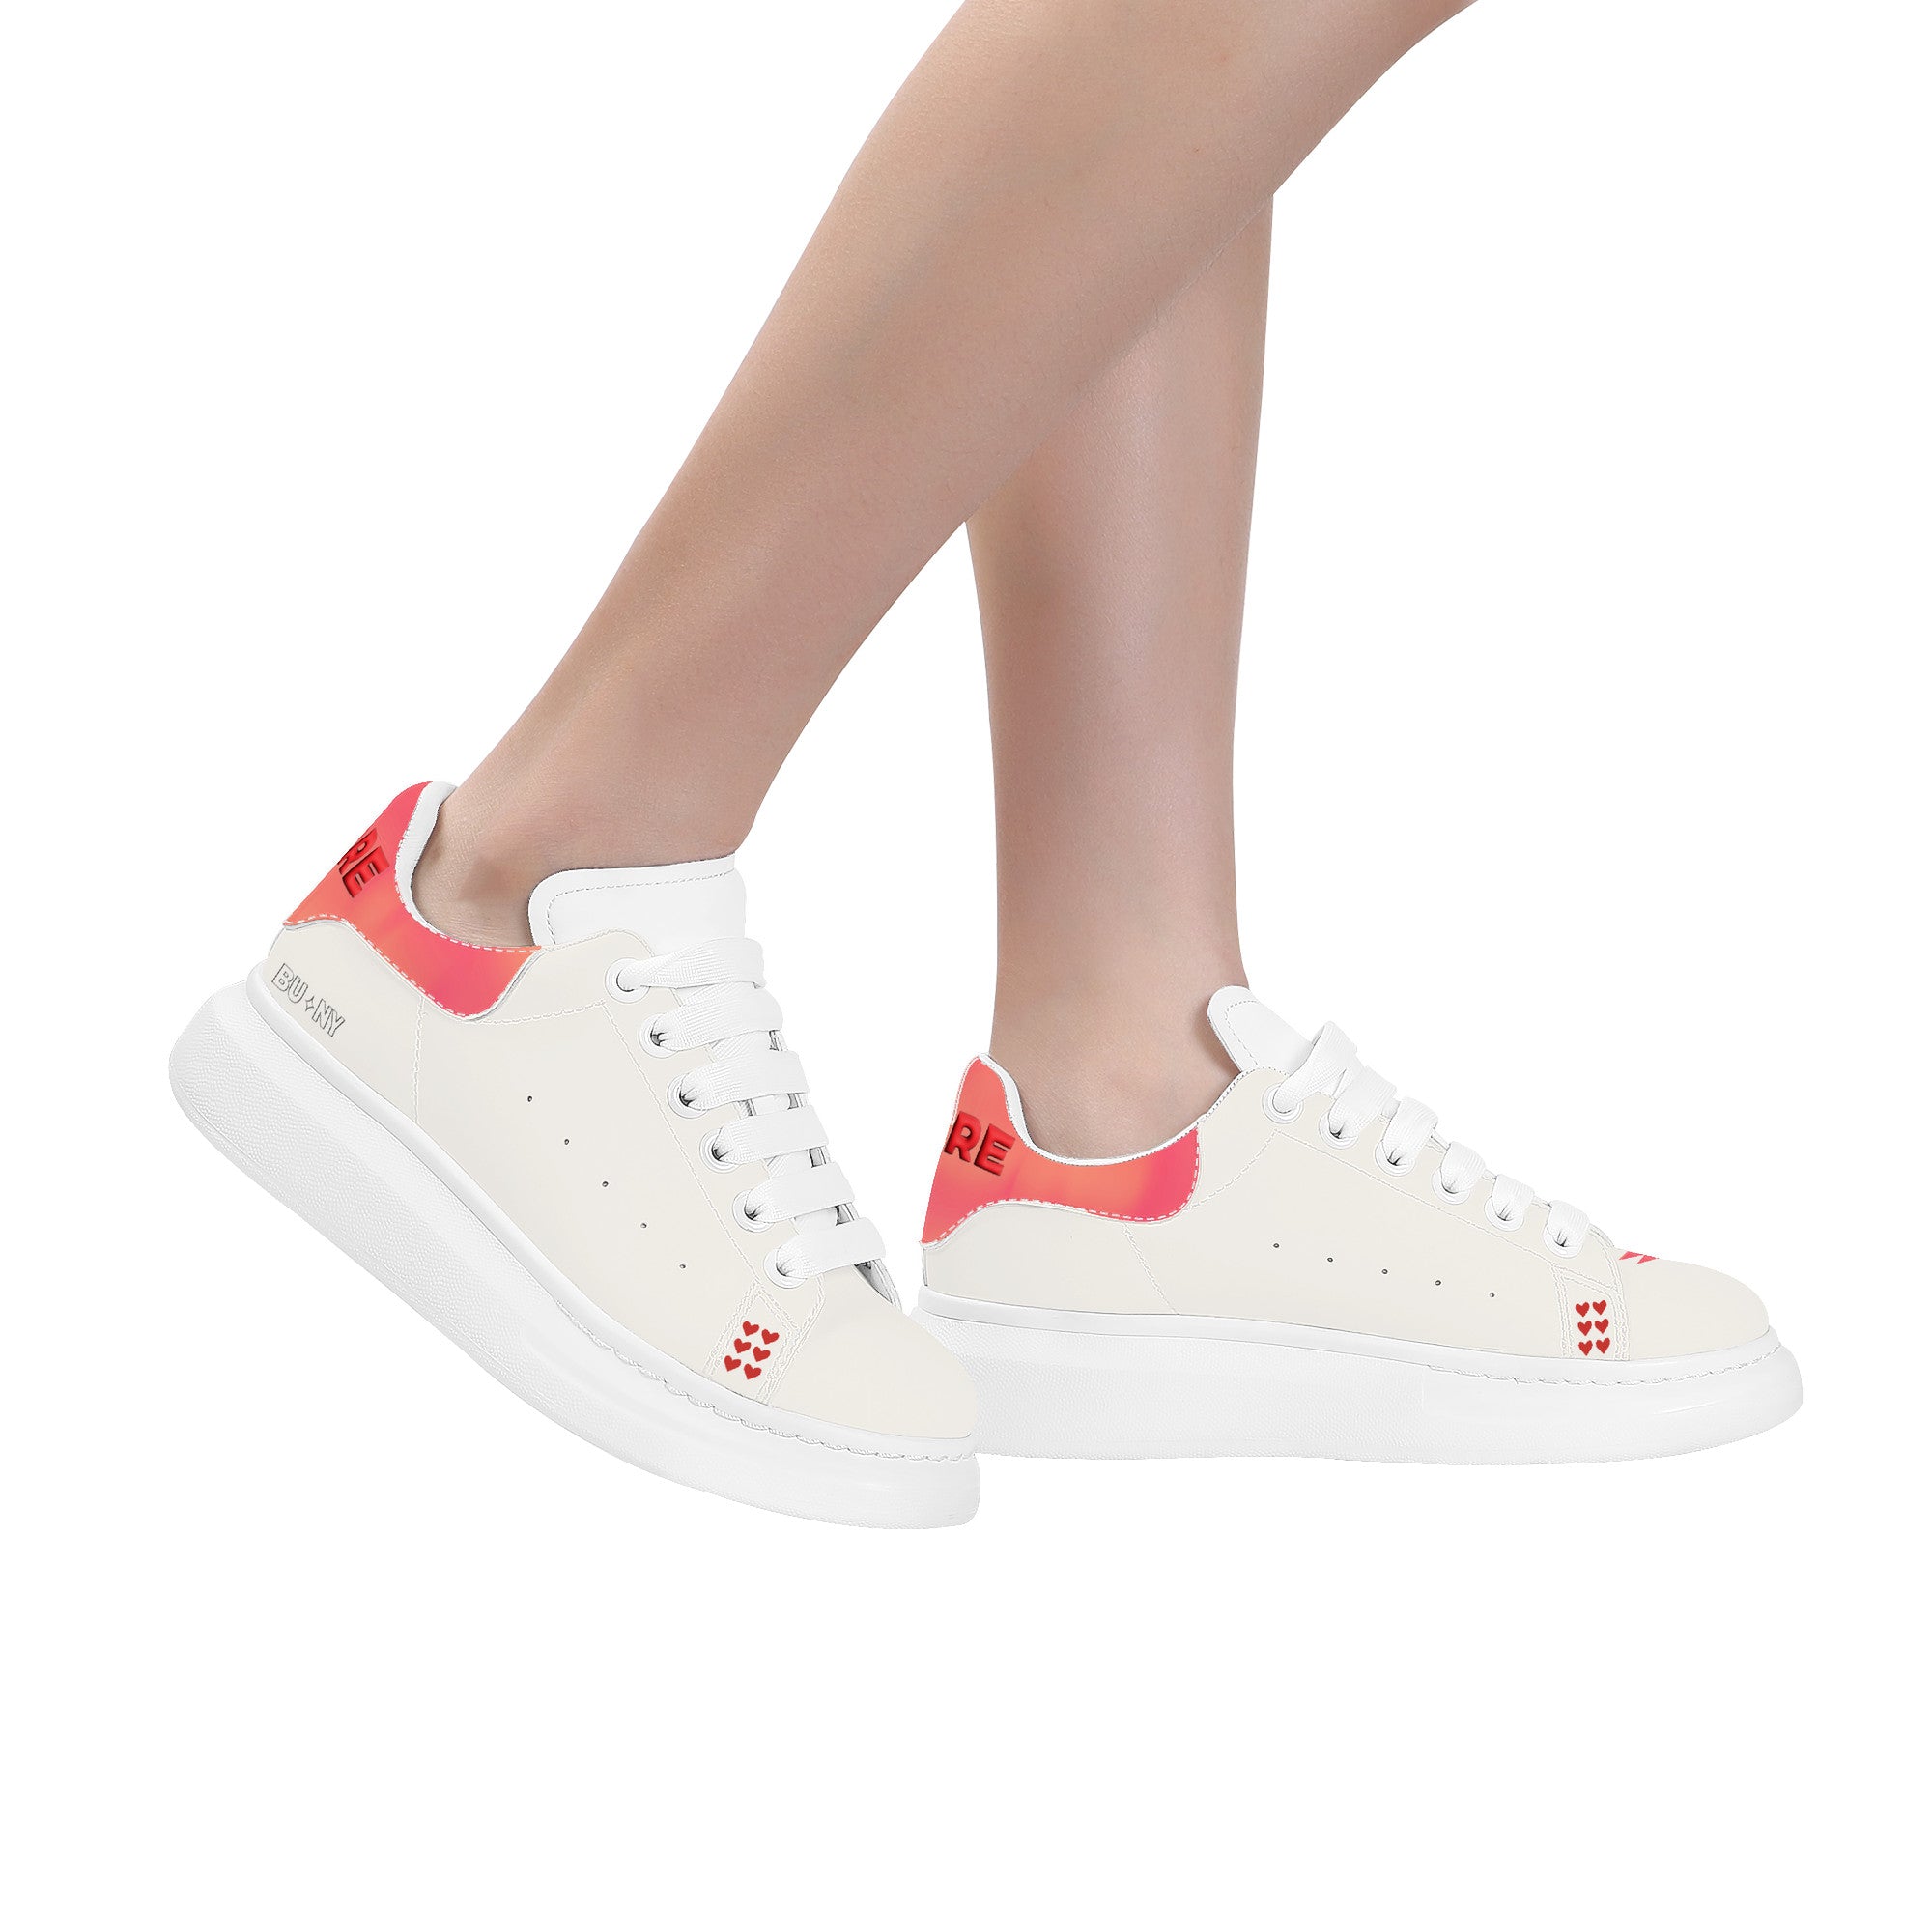 Nia C Customized Heighten Low Top Shoes - White - Shoe Zero